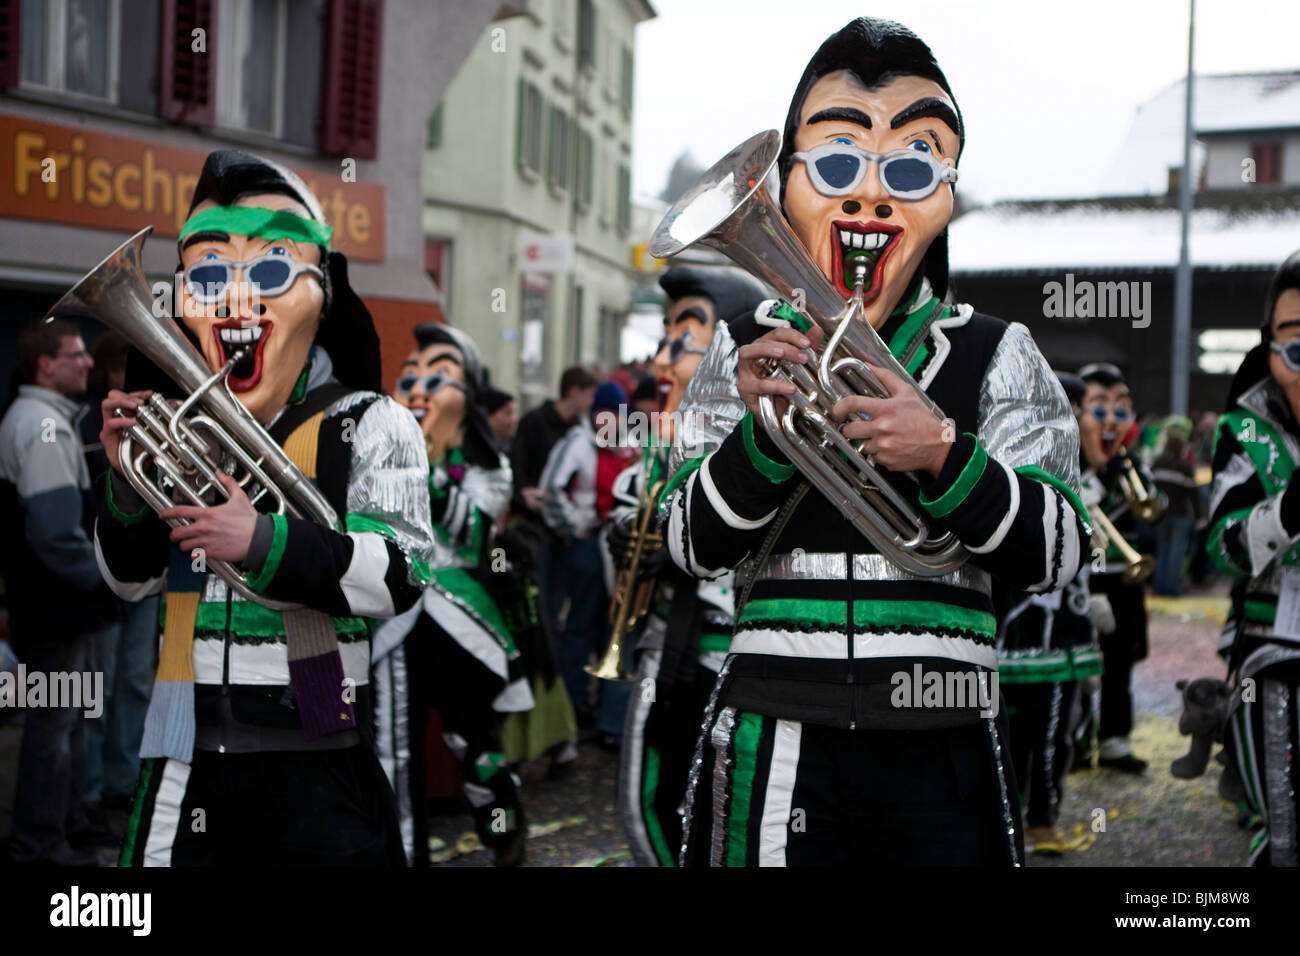 Groupe Schaedubrommer Guggenmusig habillée pour le thème de leur 30 ans anniversaire pendant le carnaval à Malters procession Banque D'Images